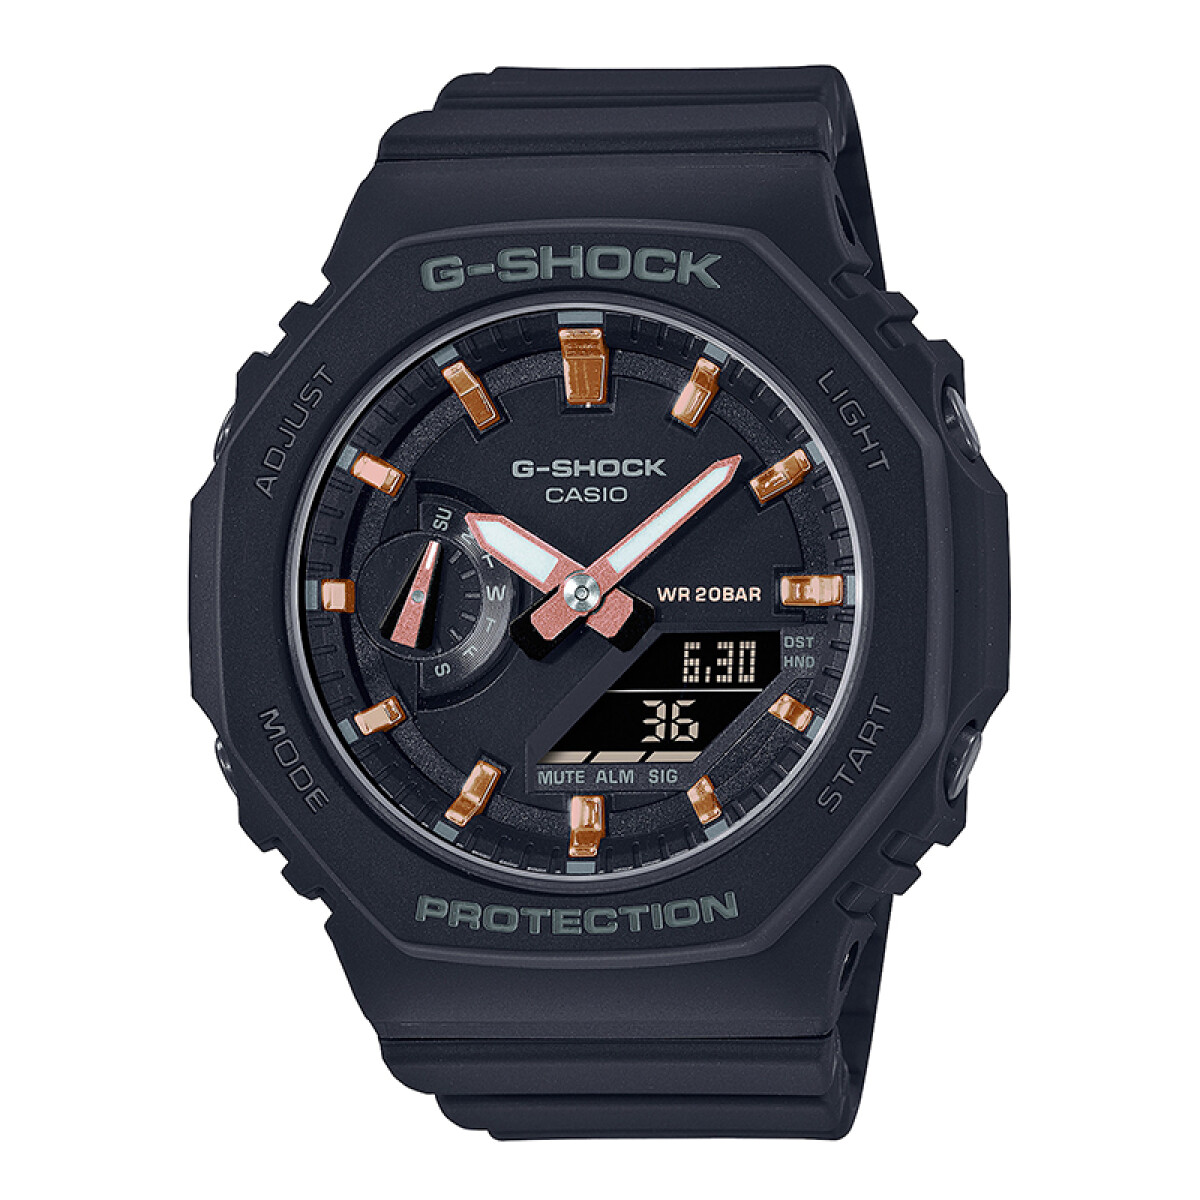 Reloj G-Shock para dama con banda de resina - negro 